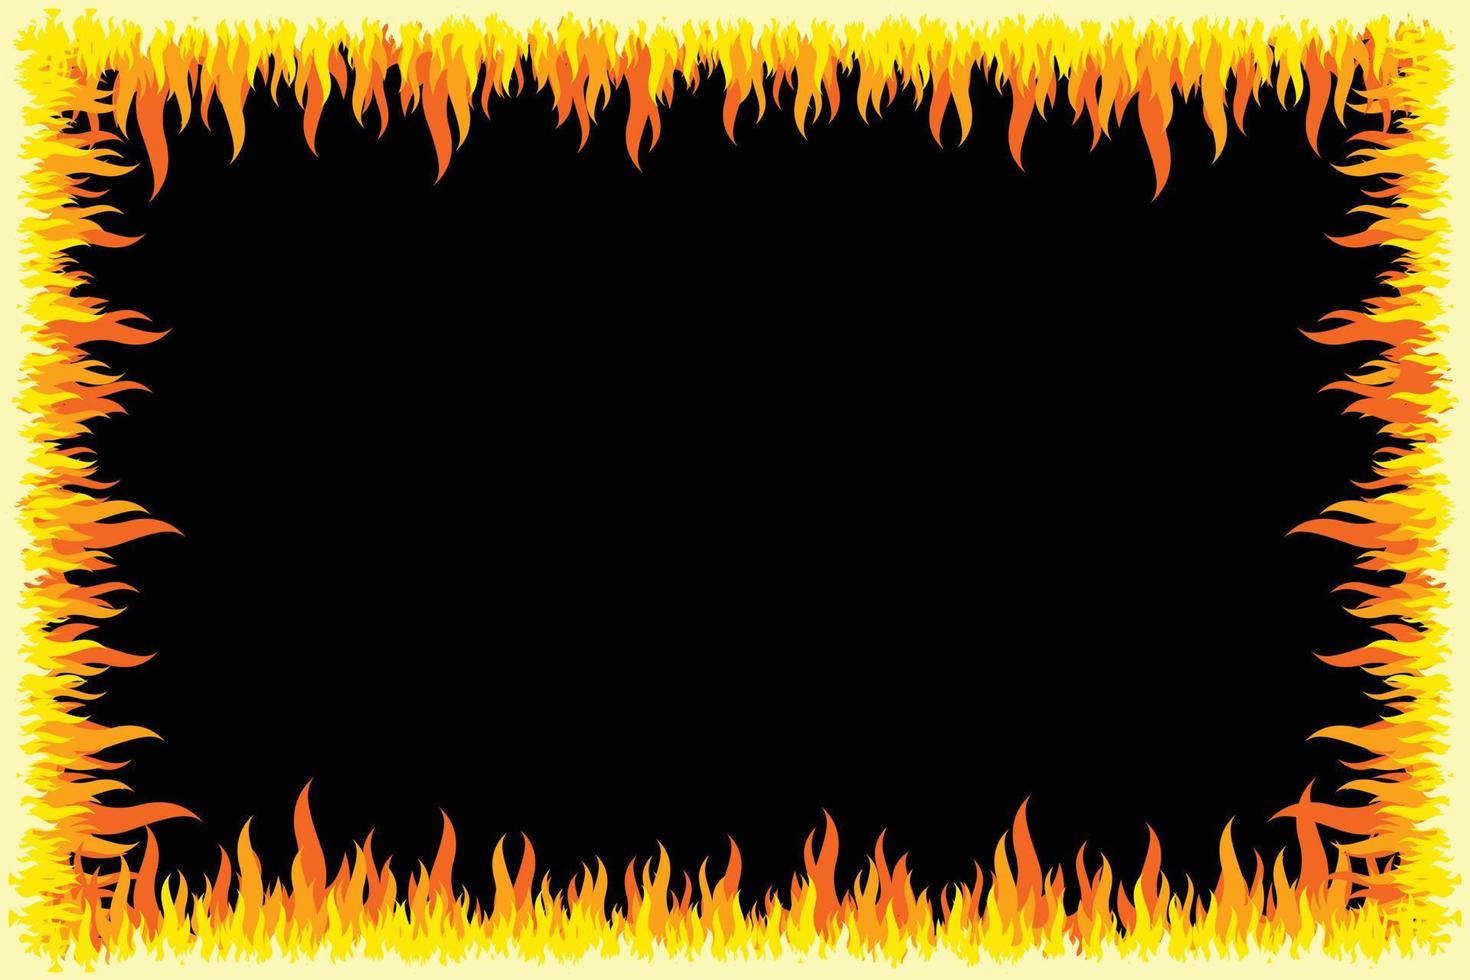 borda de efeito de chamas, moldura com fundo preto vetor